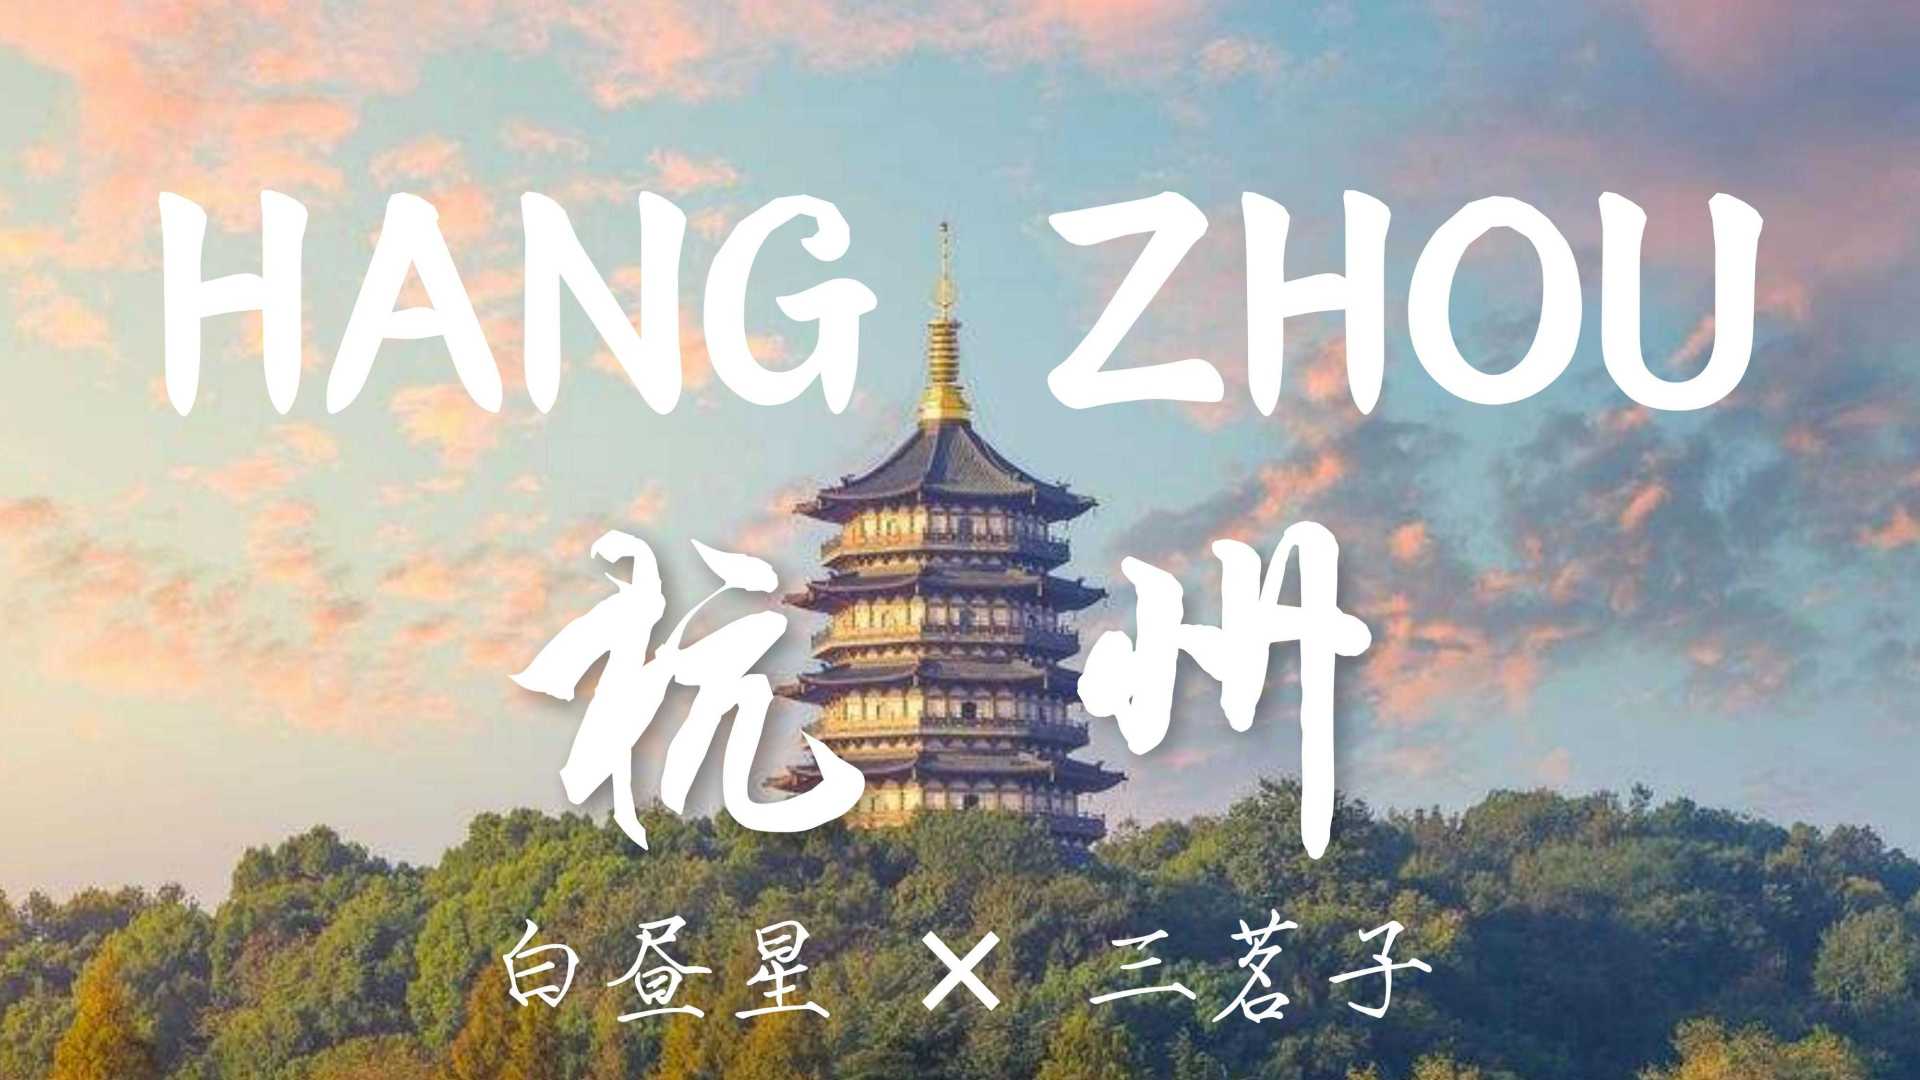 一首独具“杭州”魅力的城市音乐作品 - HANGZHOU 杭州